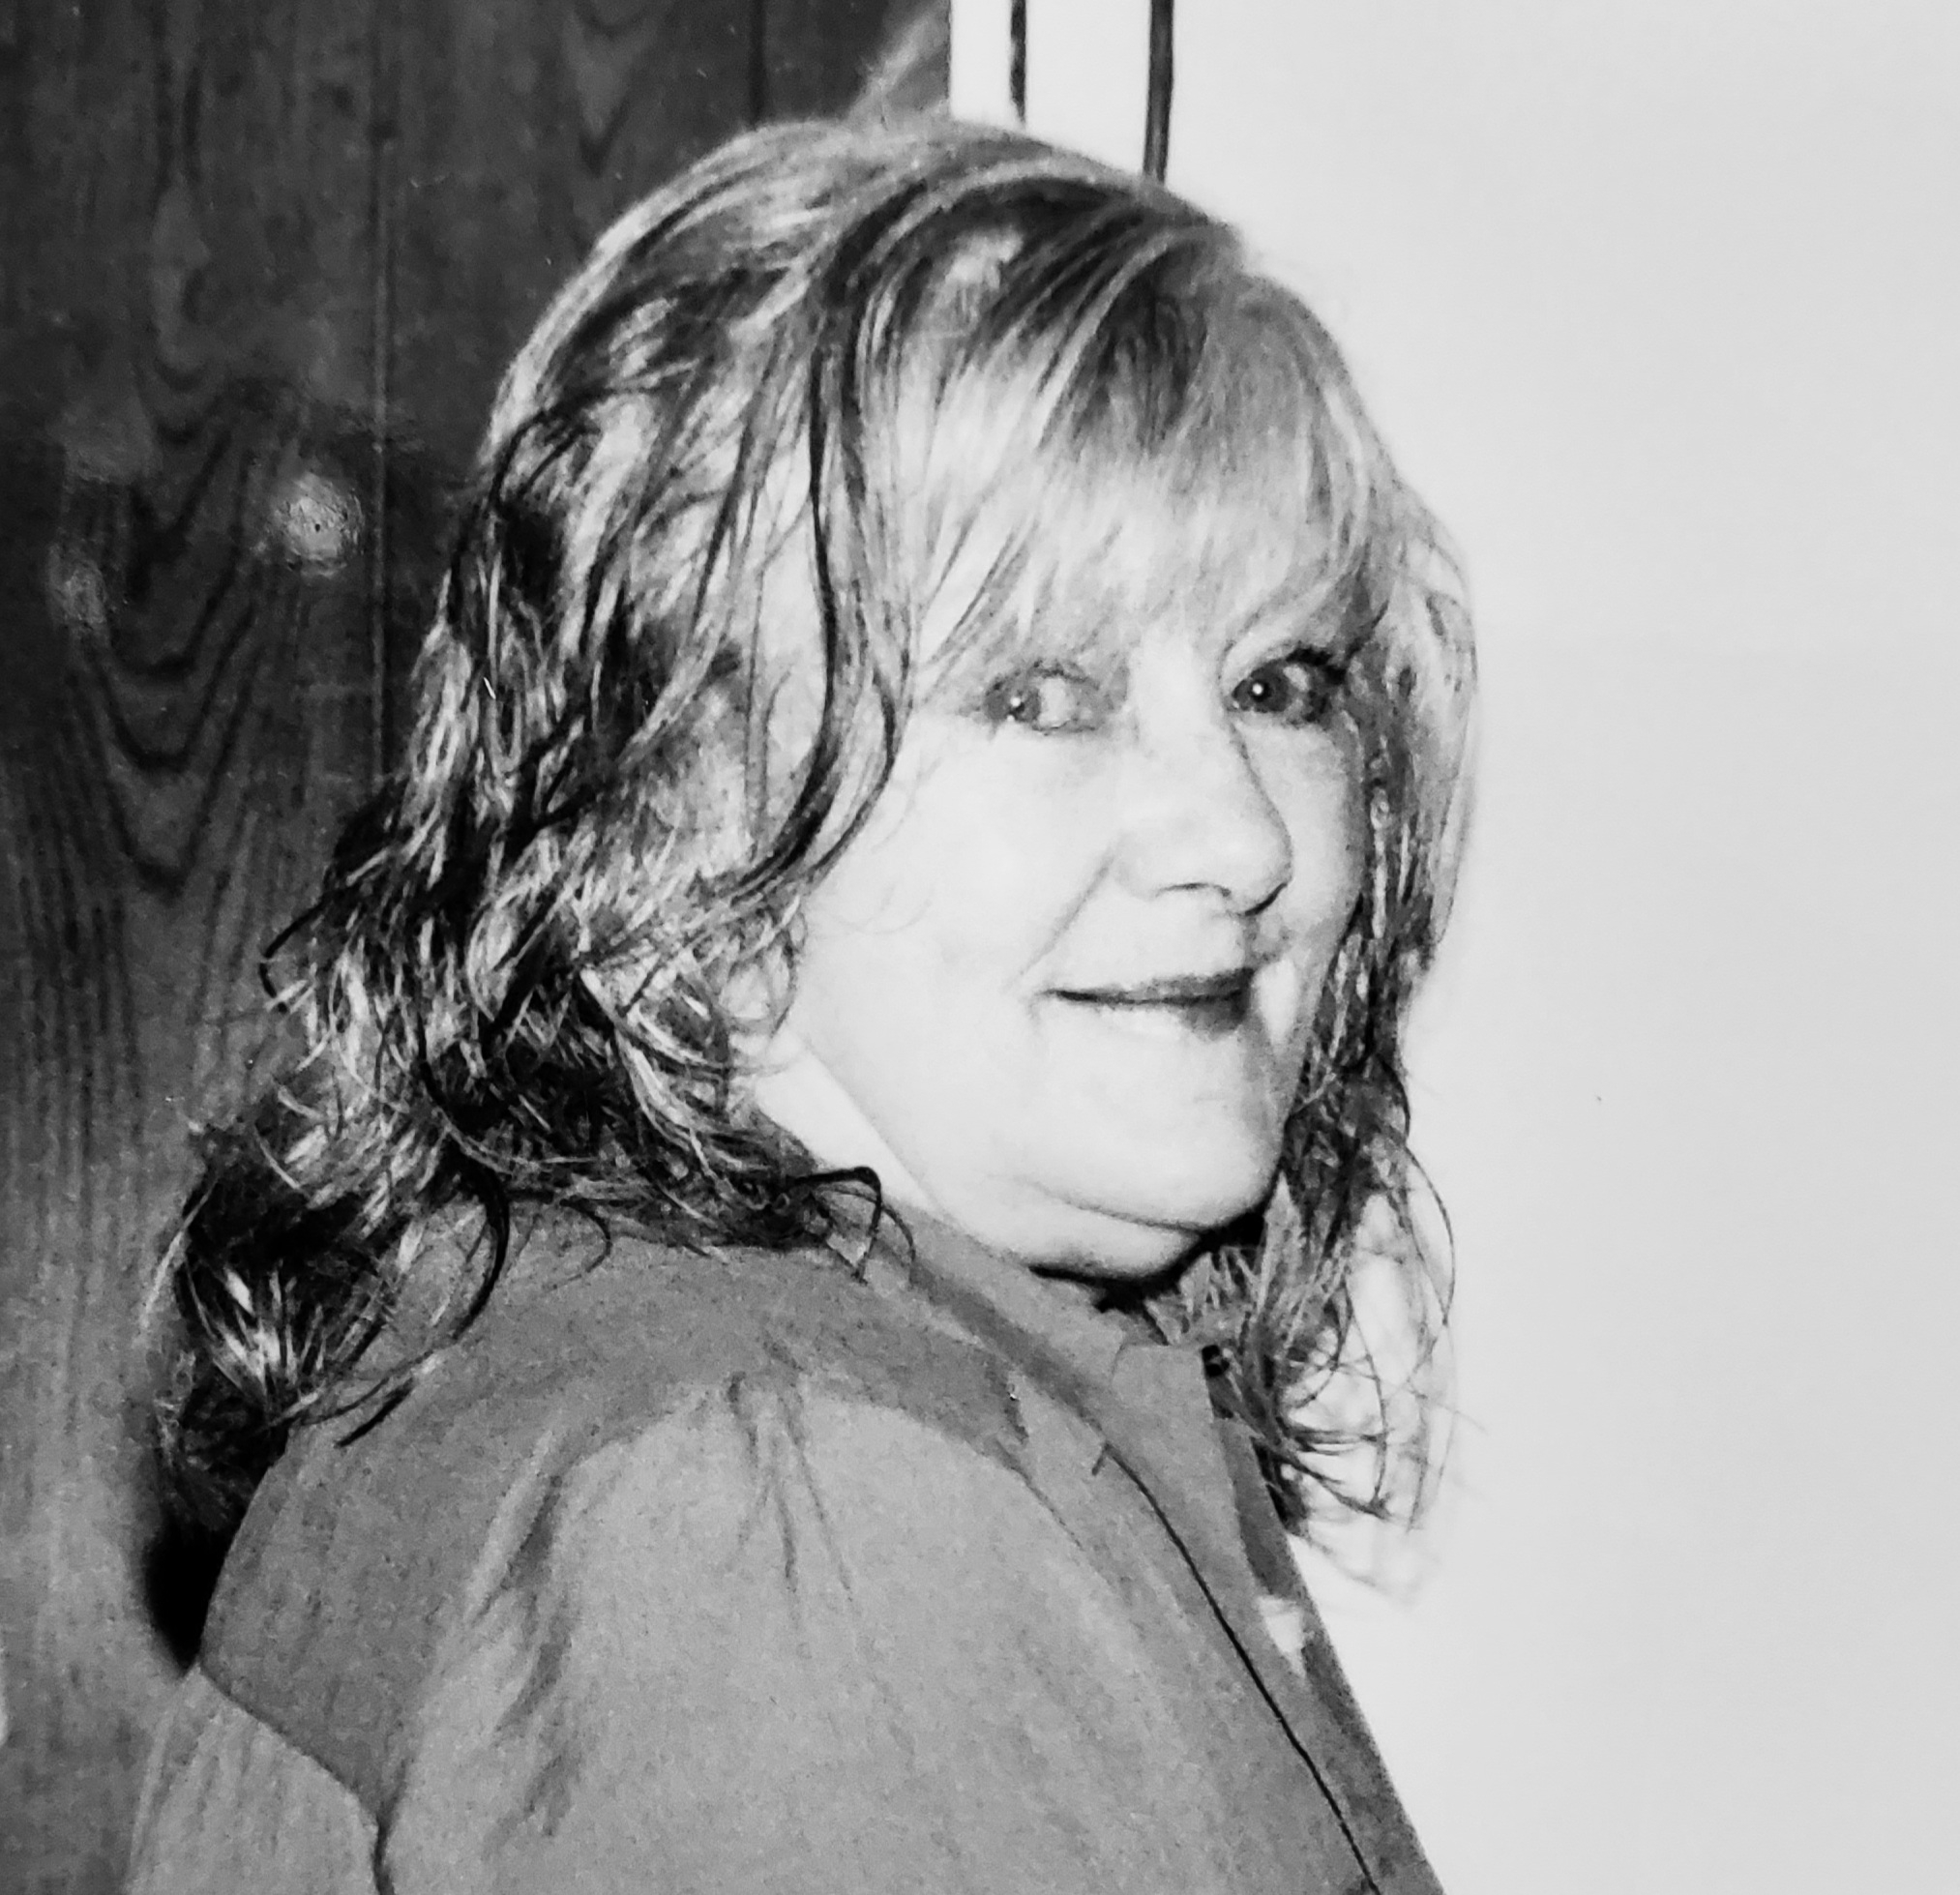 Yvonne approx 2010